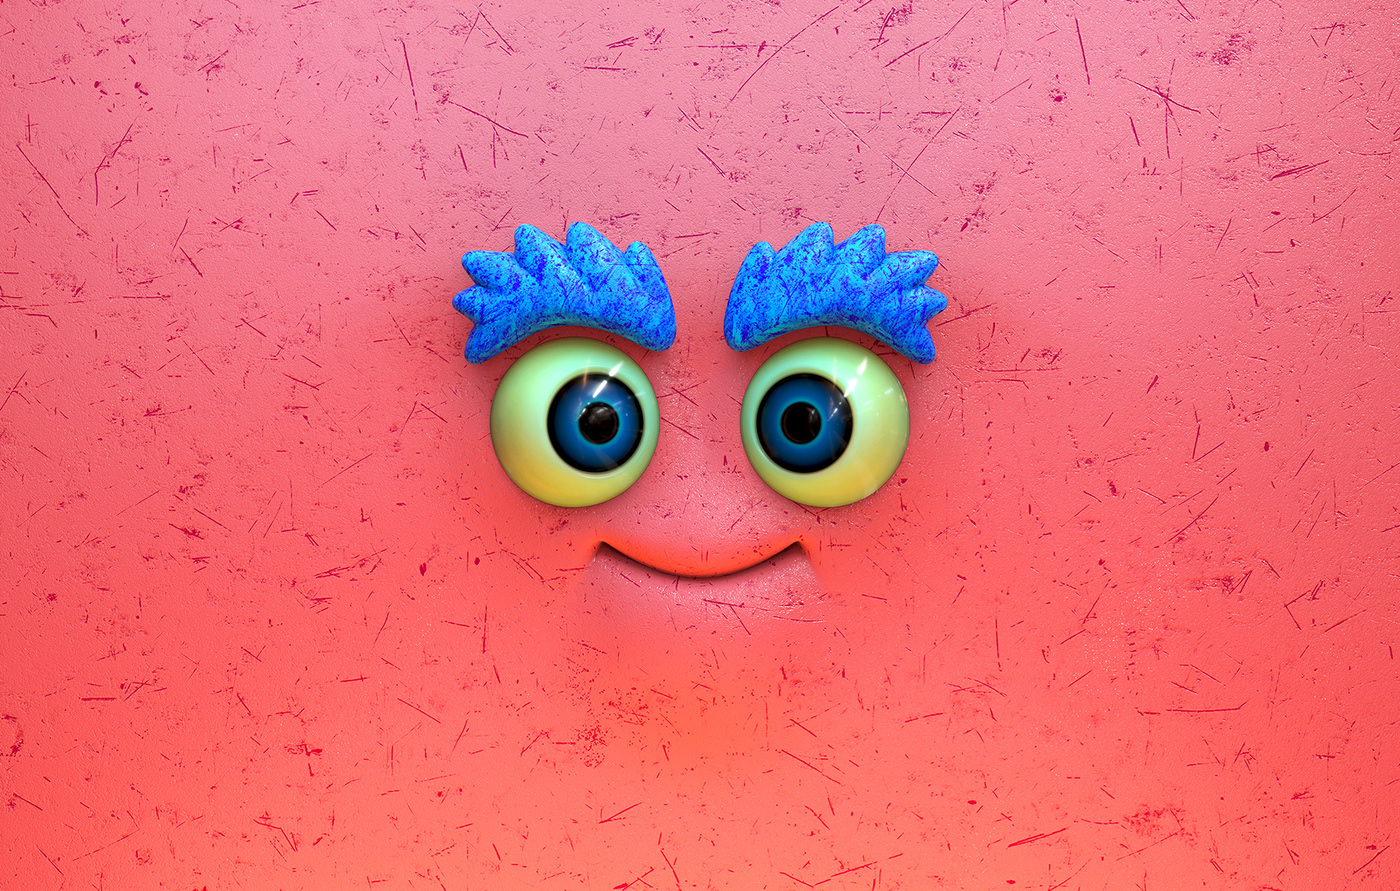 3D blender CGI Character faces Render 2023 design colorful inspiration pink